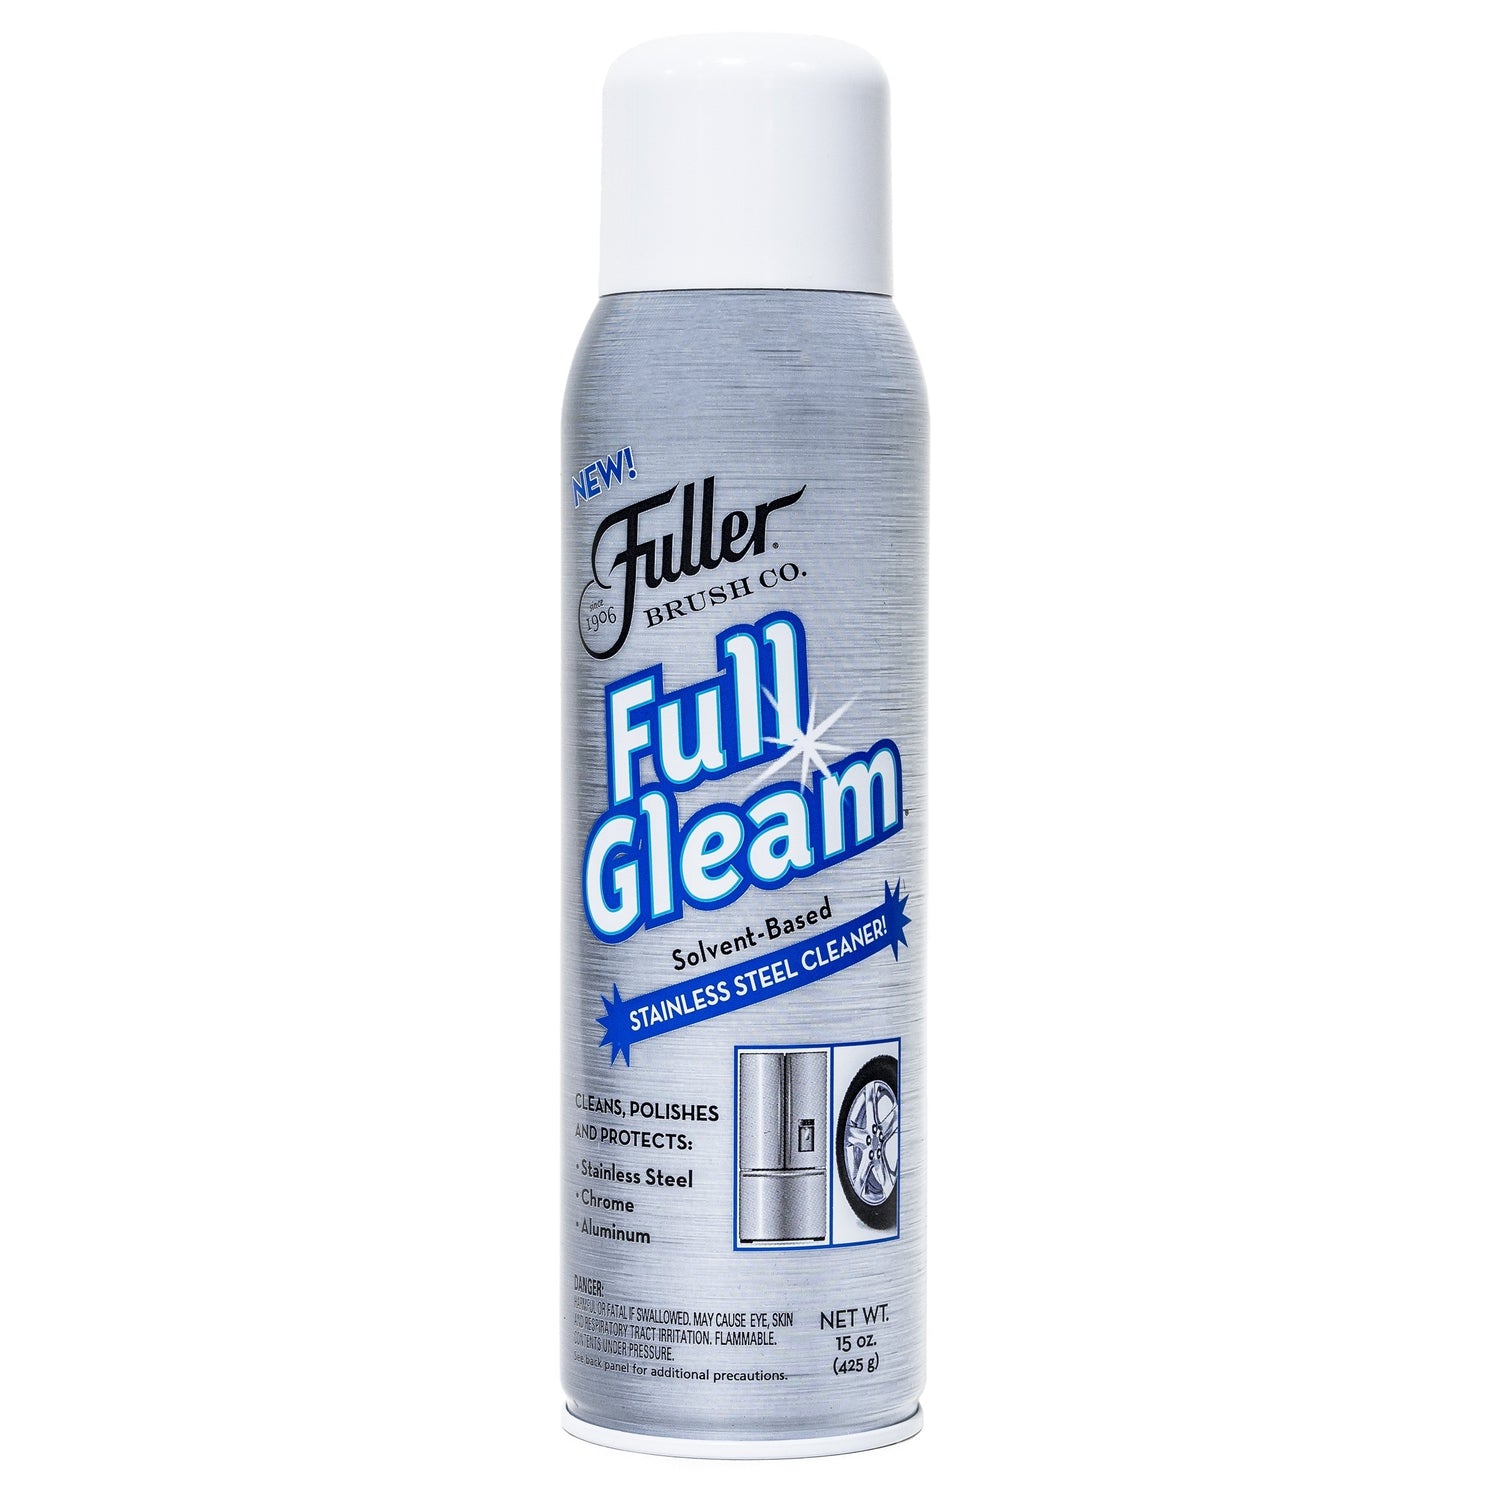 Fuller Brush Full Gleam Stainless Steel Cleaner